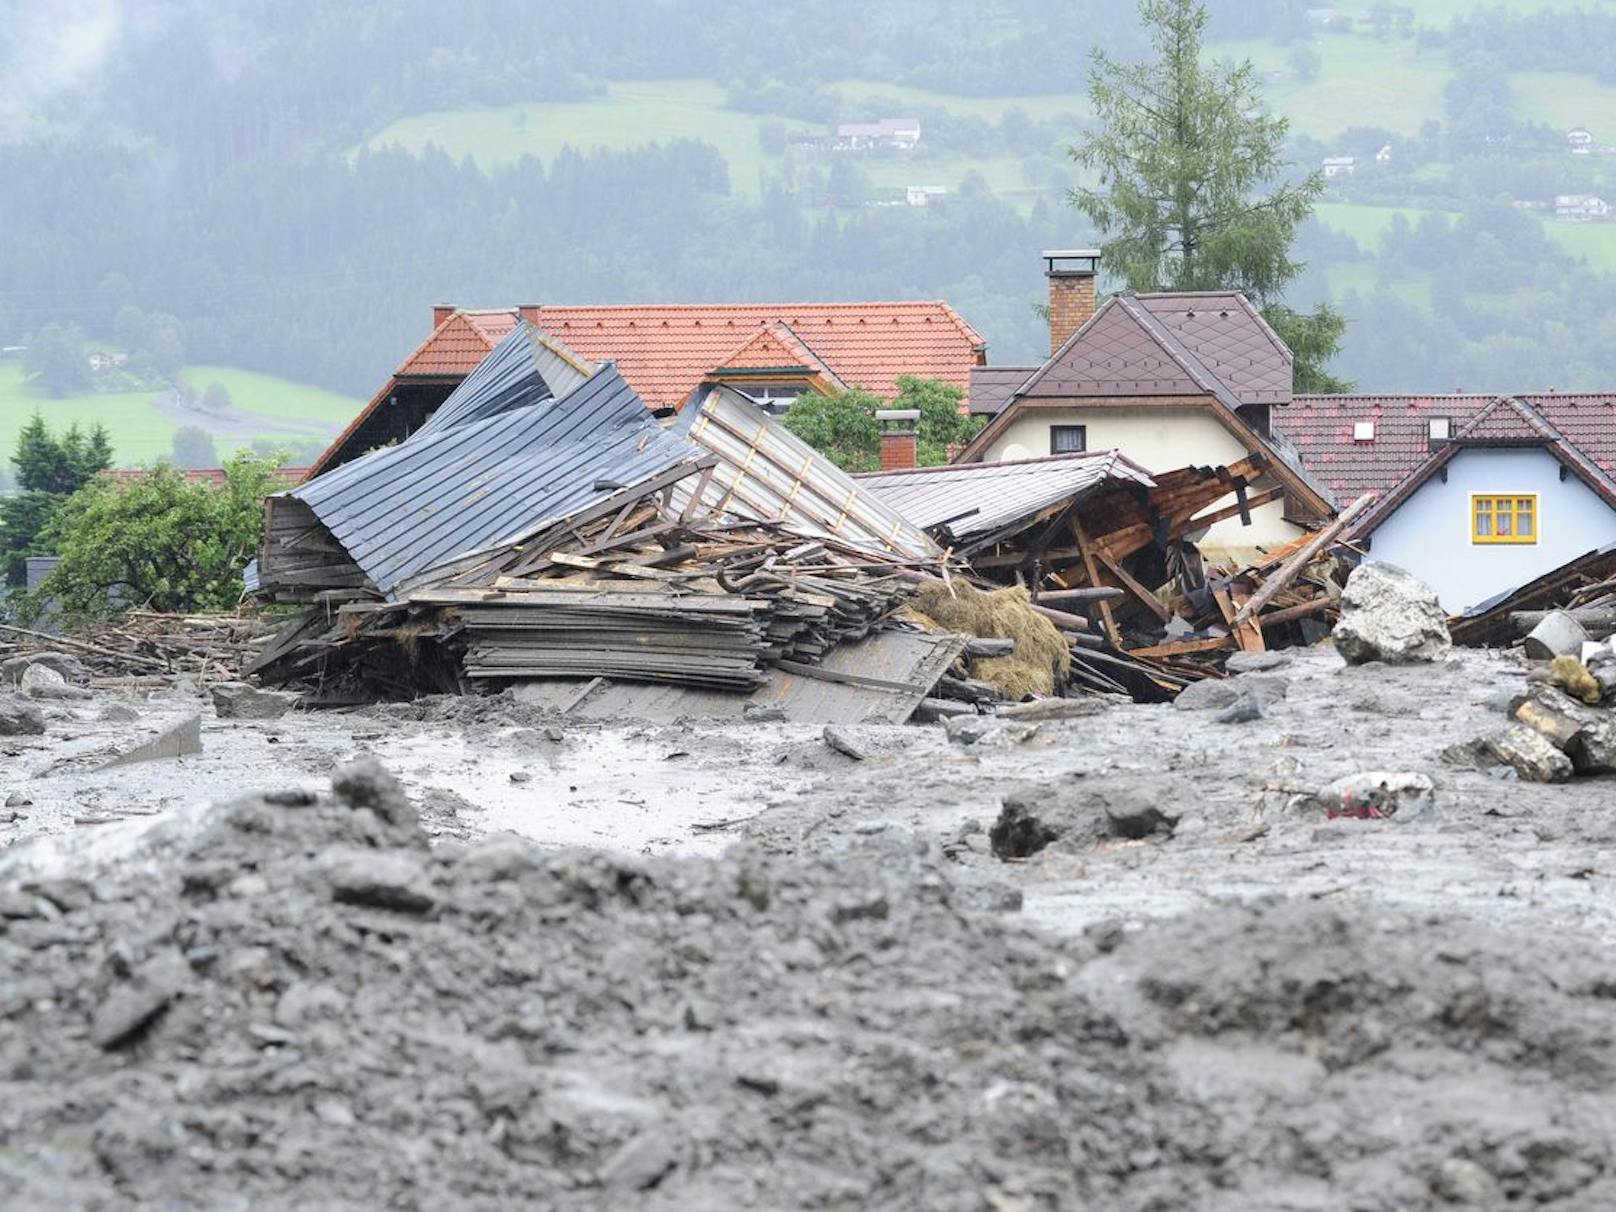 Stürme, Überschwemmungen und weitere wetter- und klimabedingte Extremereignisse haben in Europa enorme Schäden angerichtet.